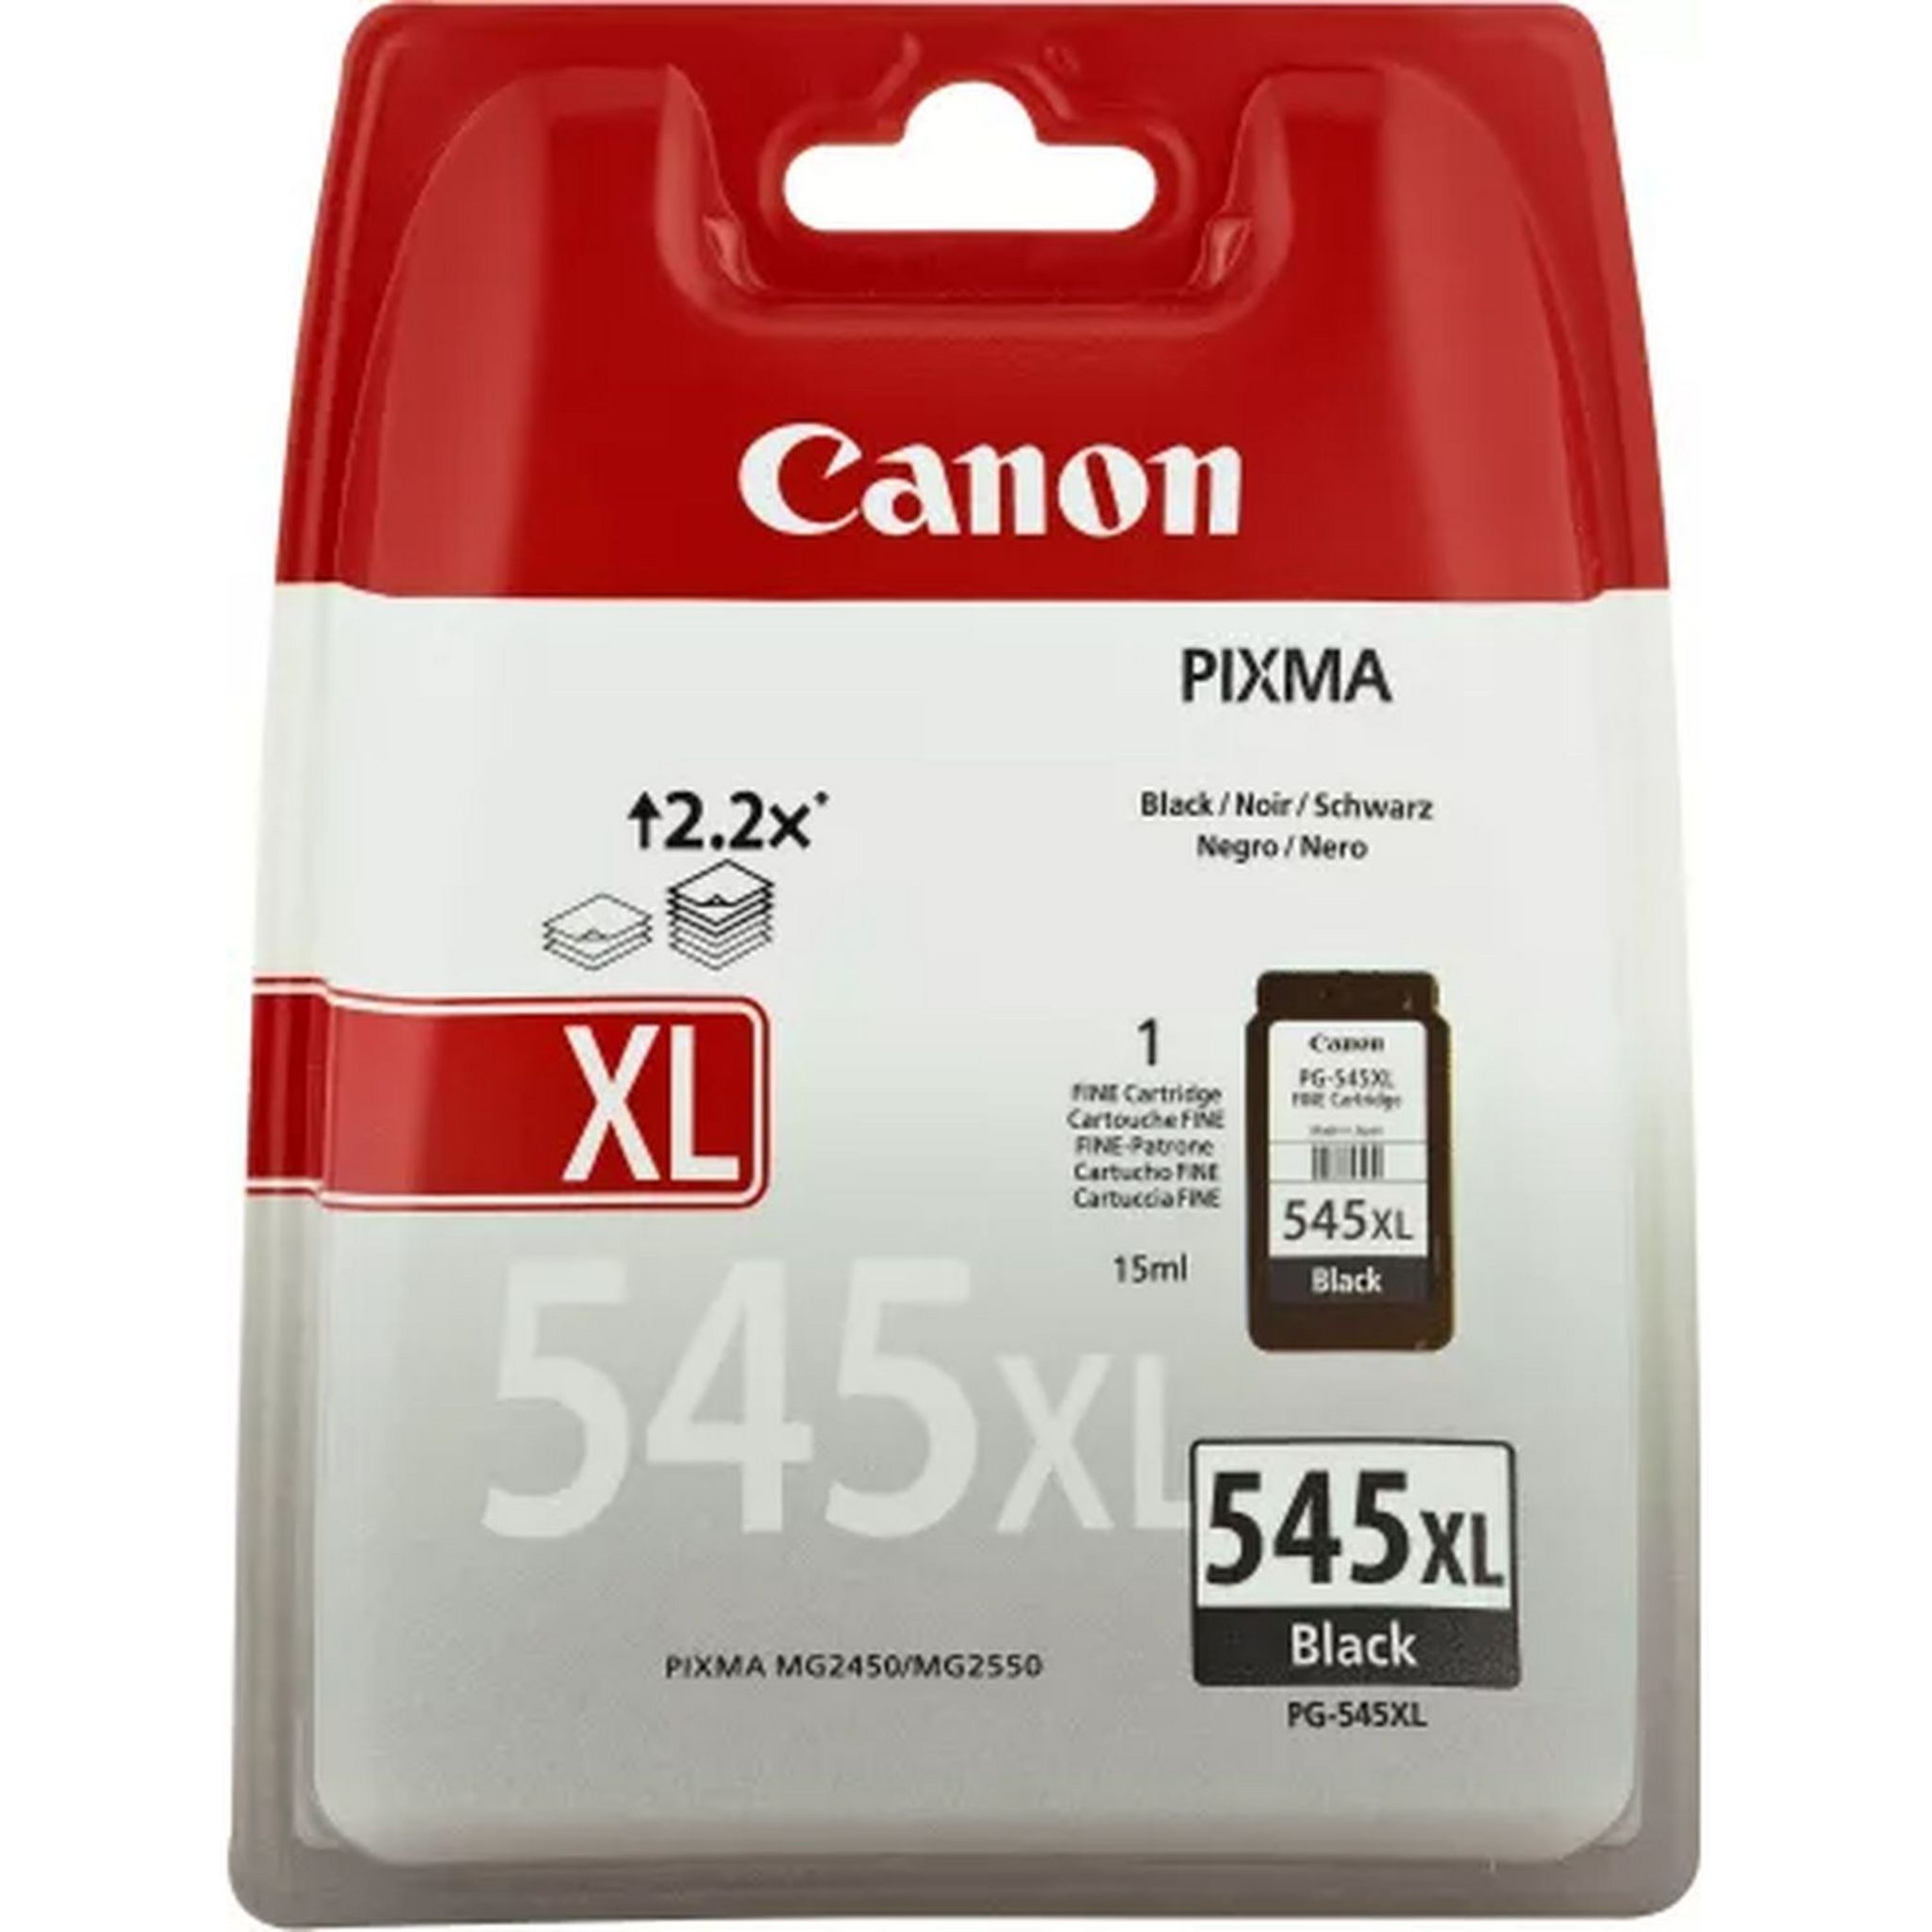 Cartouche 545 XL,Remplacement pour Canon PG-545XL Noir, Cartouche